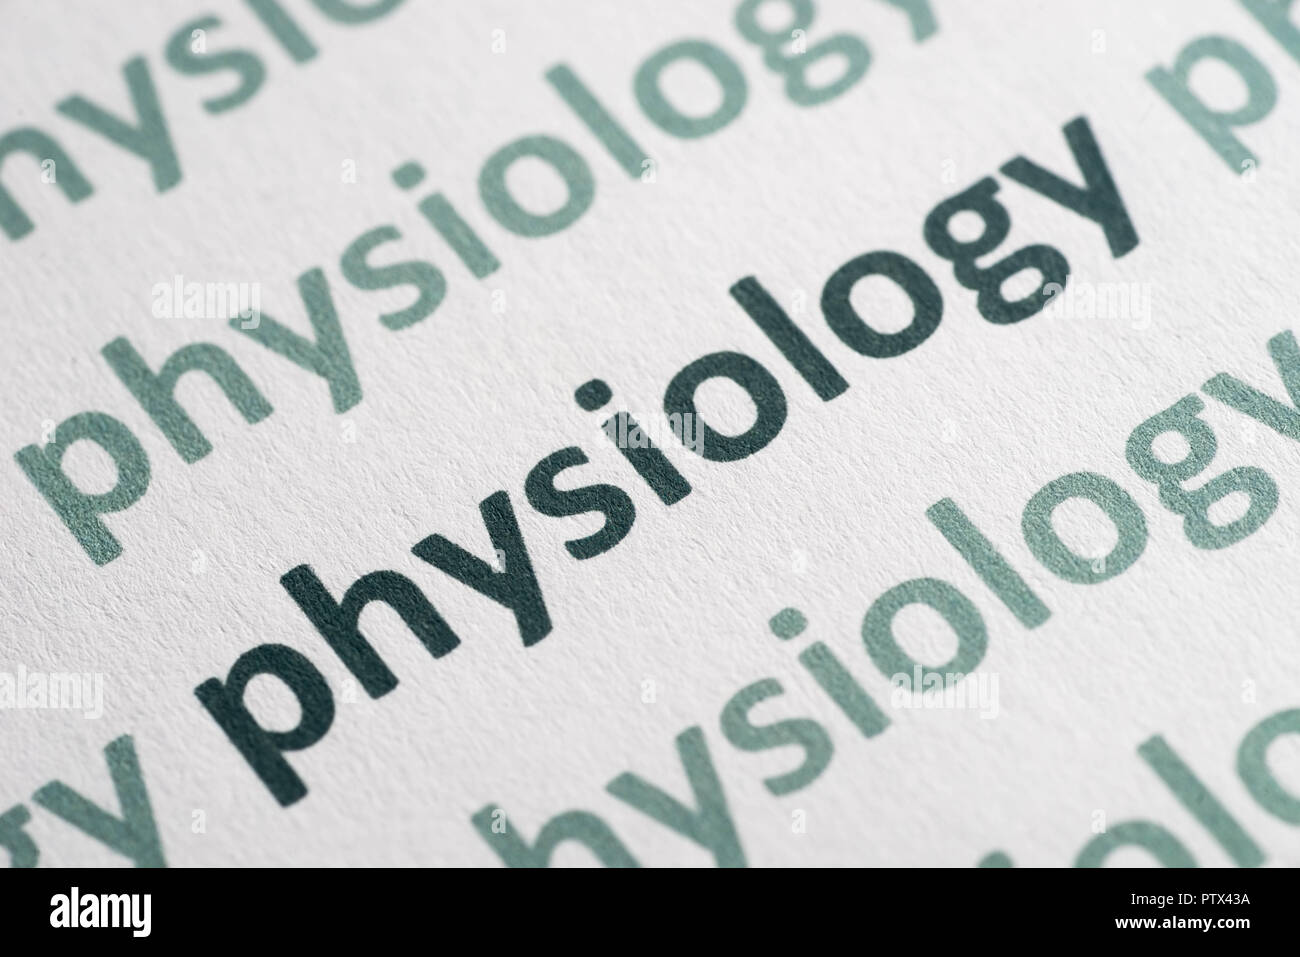 Fisiologia di parola stampata su carta bianca macro Foto Stock